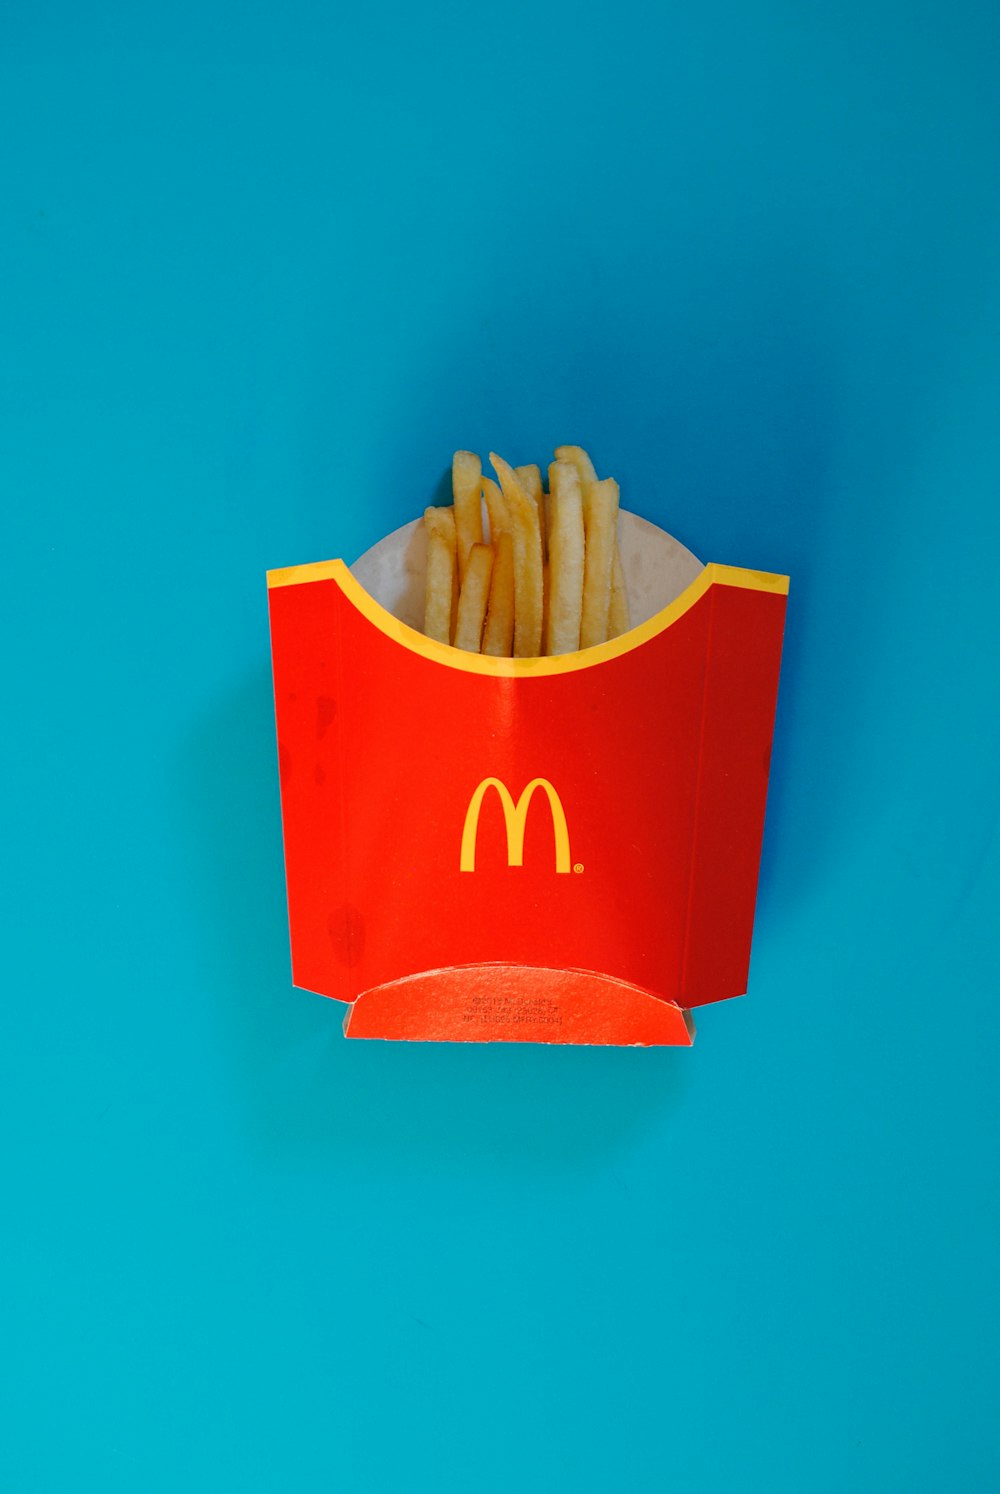 Papas fritas de McDonalds en caja de papas fritas rojas de McDonalds